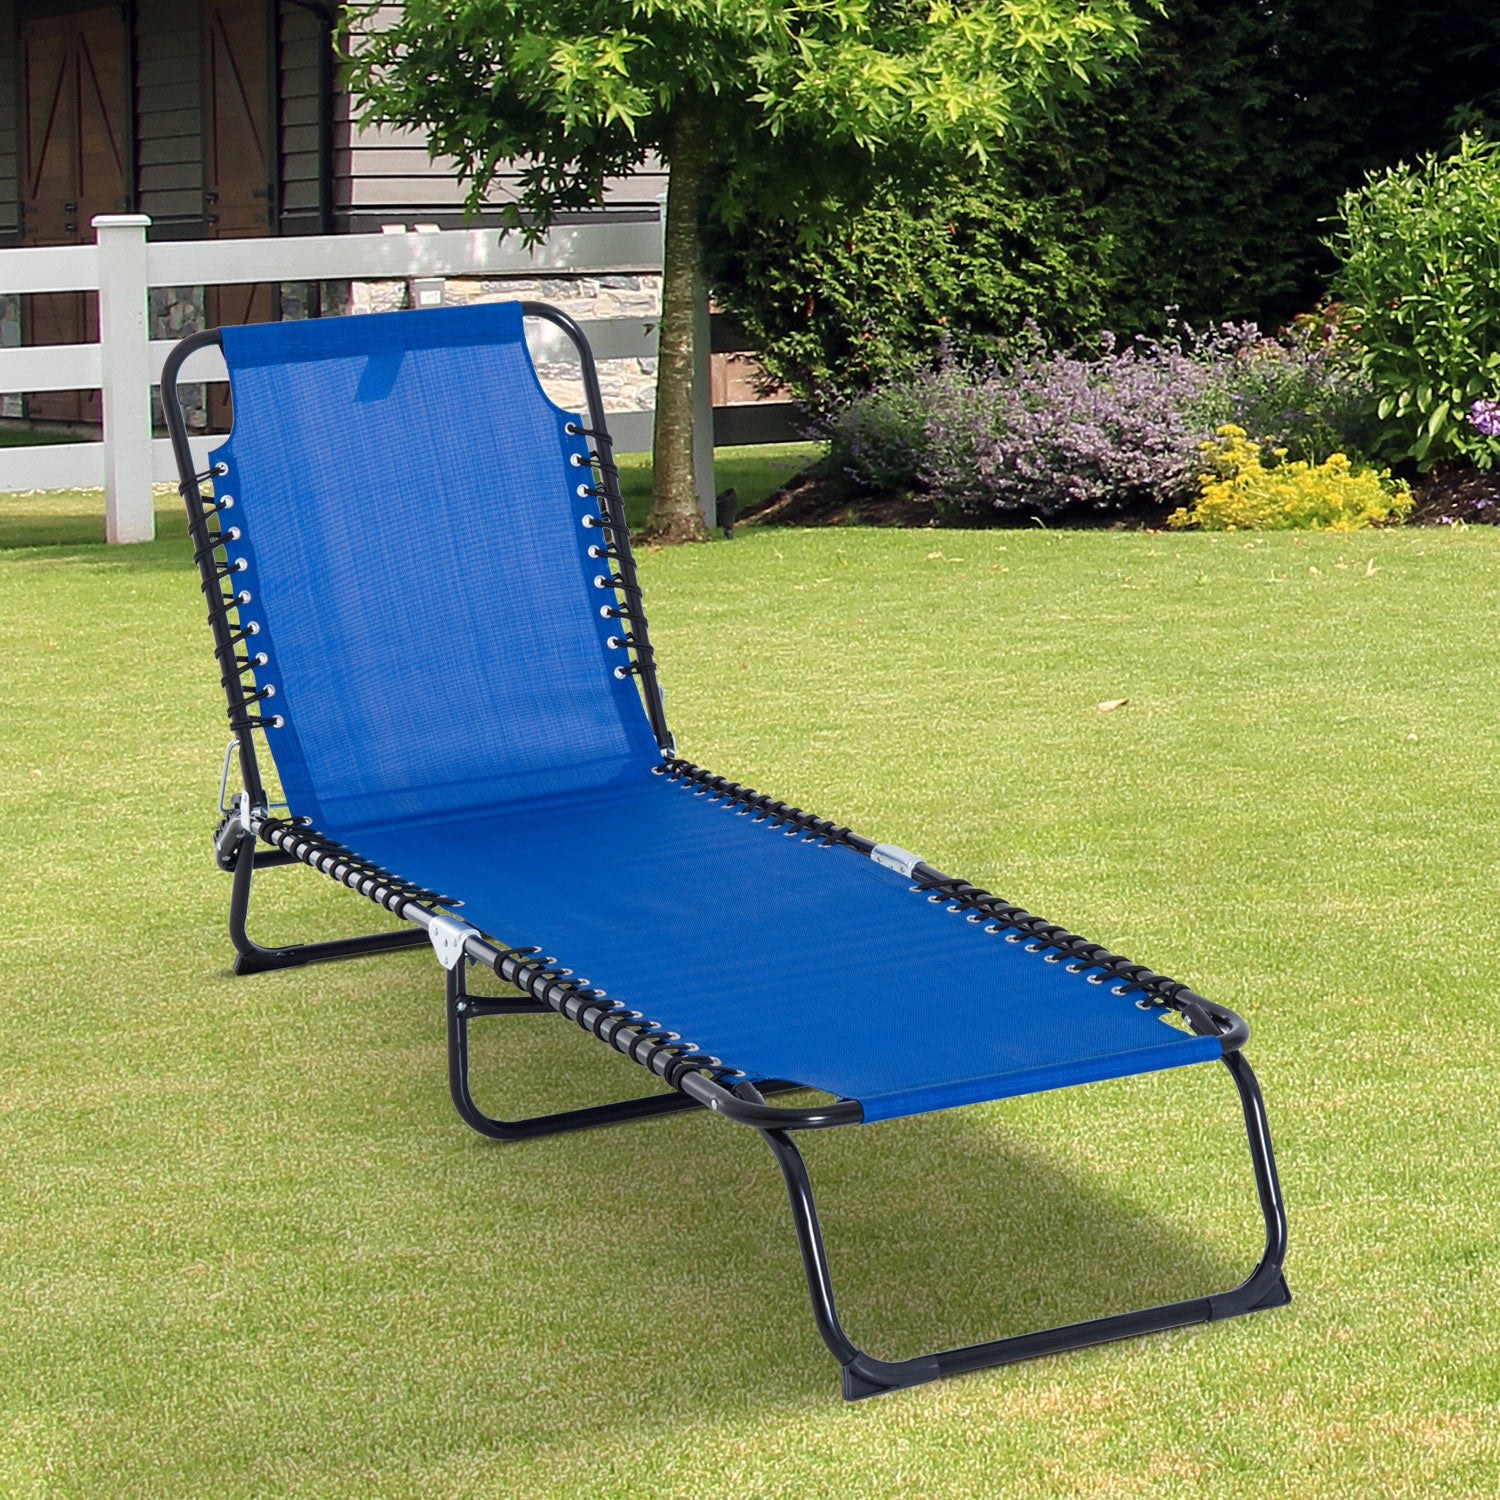 3-Position Reclining Beach Chair Chaise Lounge Folding Chair - Cream White